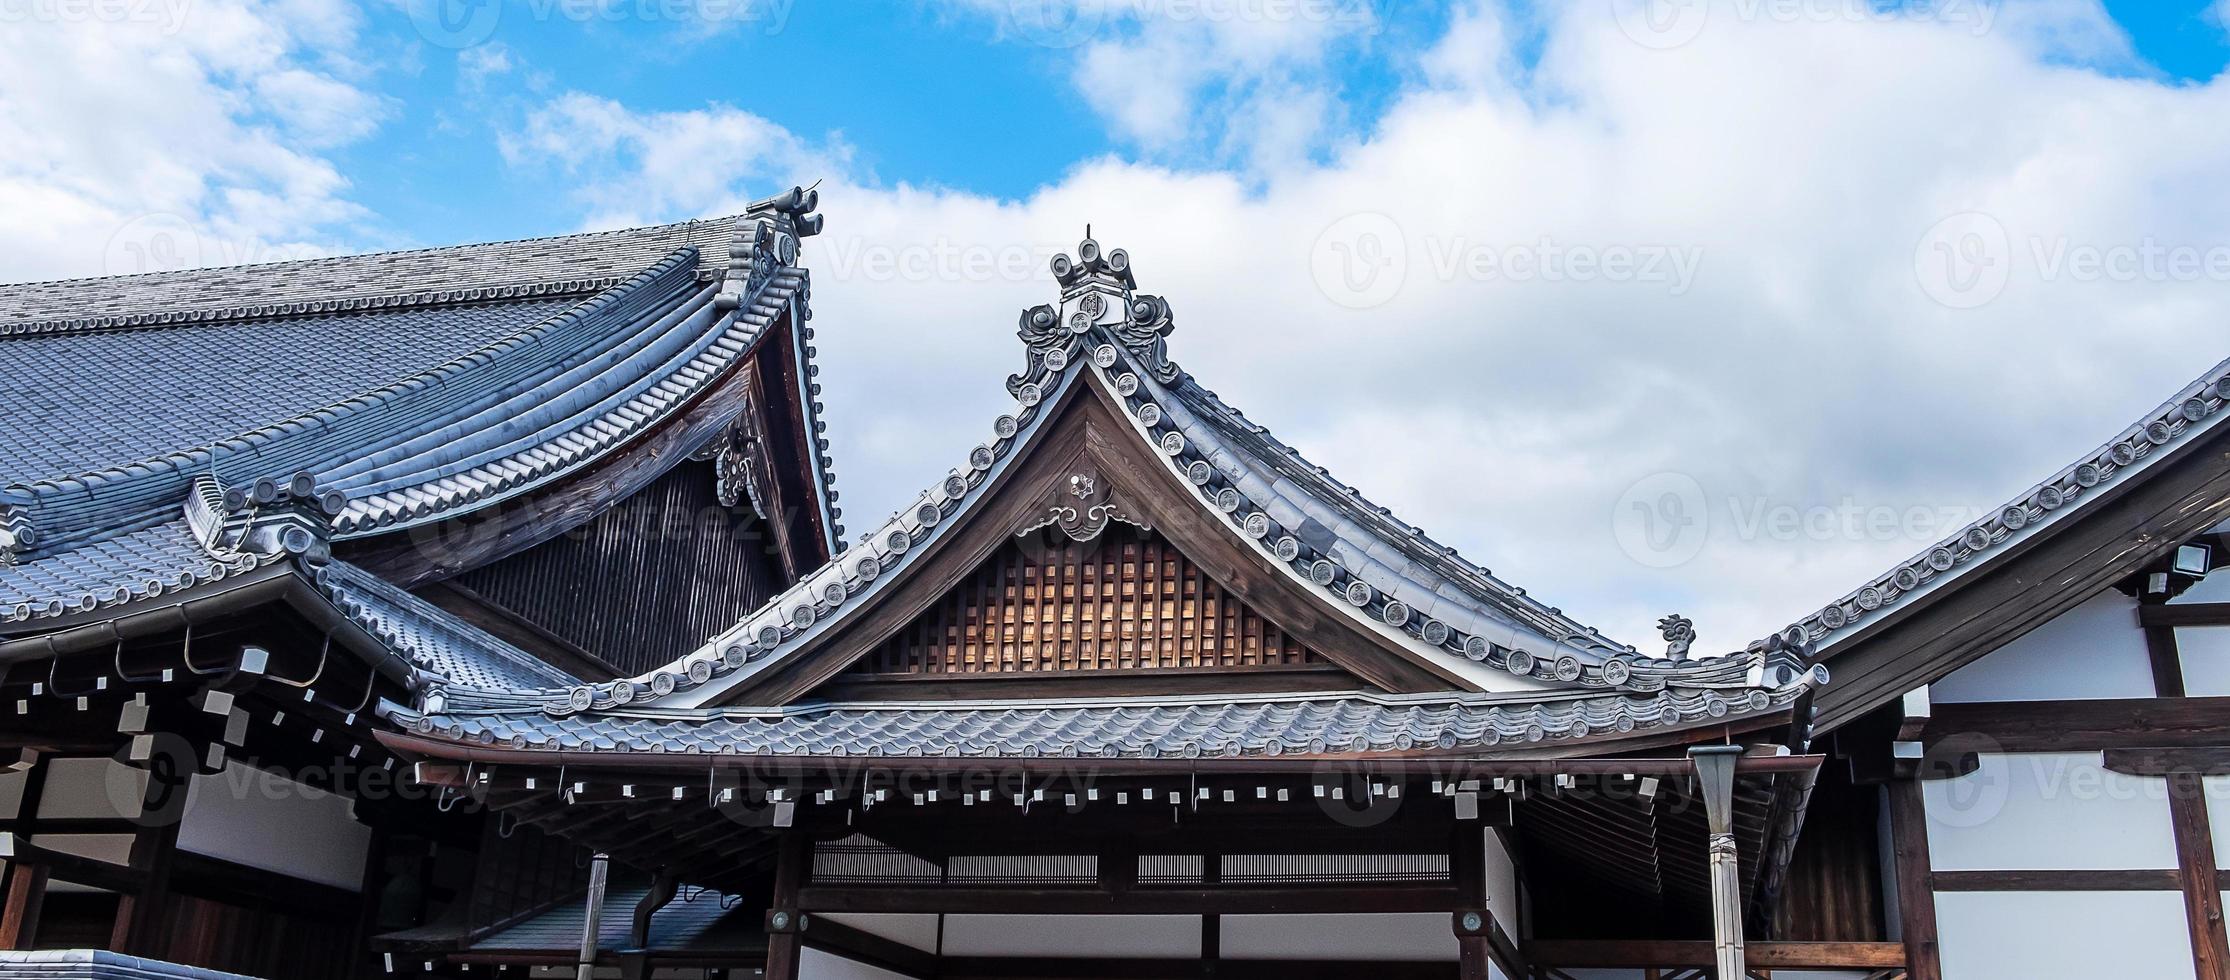 tempio tenryuji, punto di riferimento e popolare per le attrazioni turistiche di arashiyama. kyoto, giappone foto